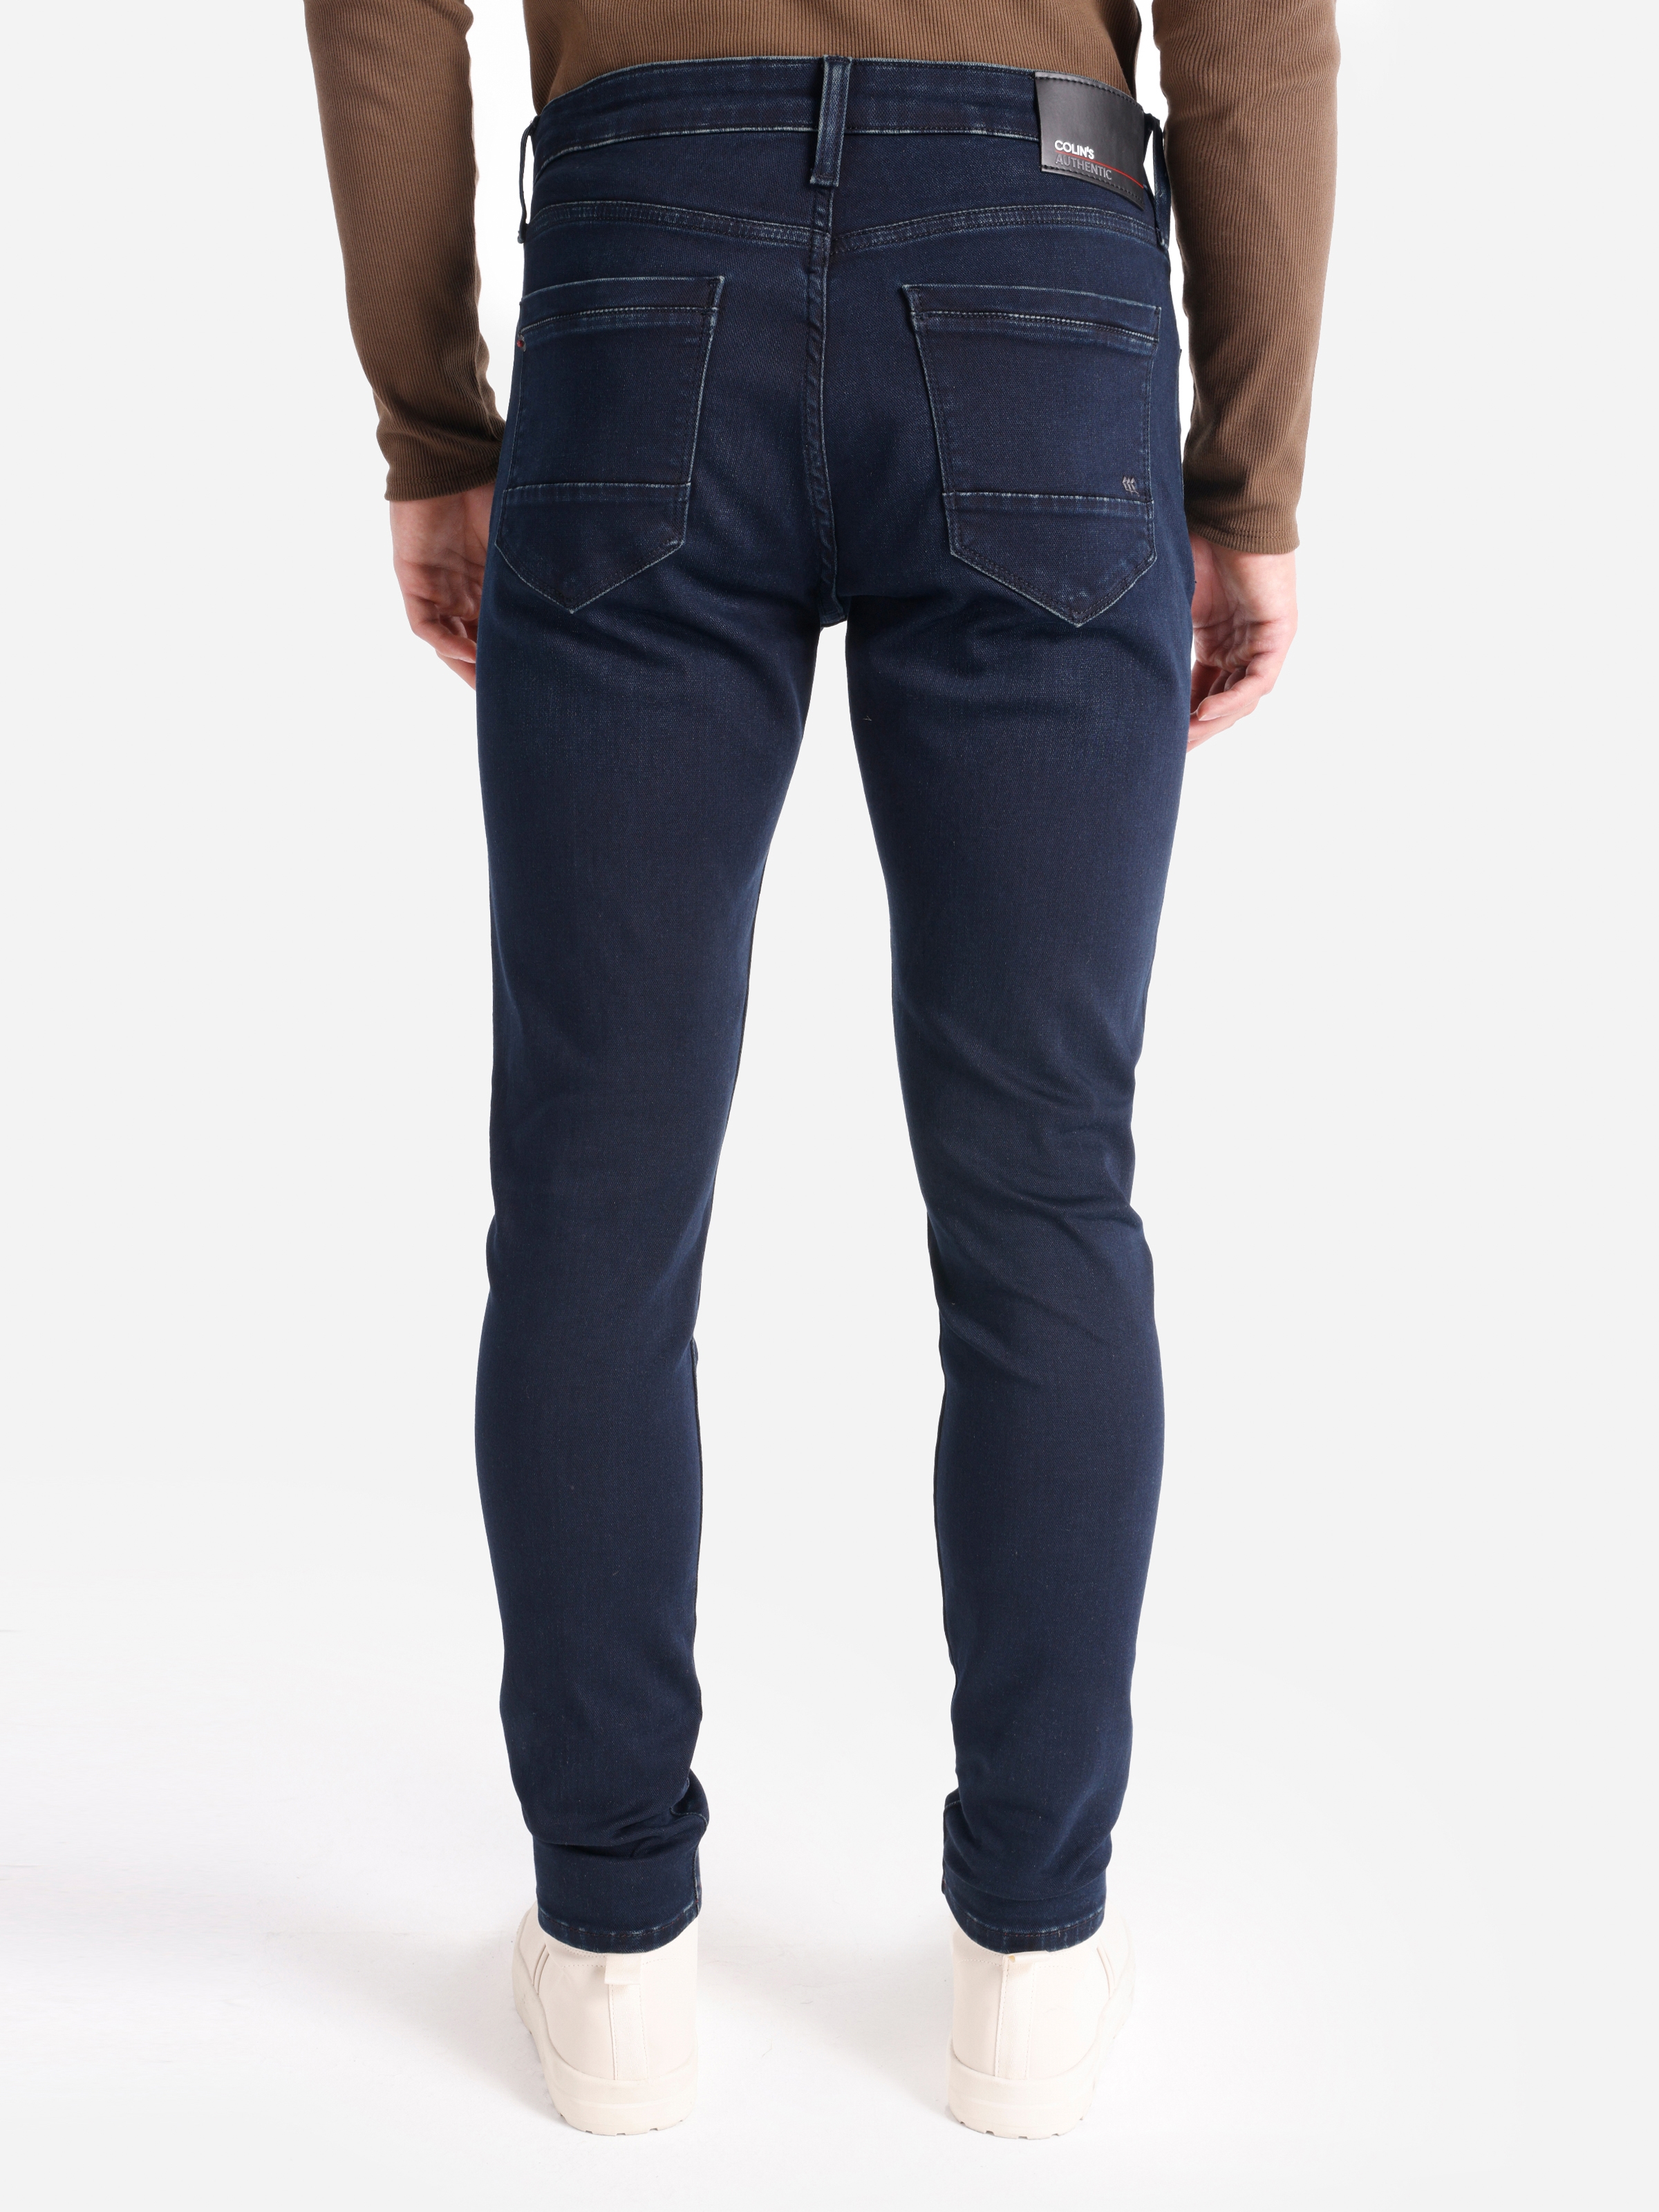 Afișați detalii pentru Pantaloni De Barbati Albastru inchis Slim Fit 041 DANNY CL1066487